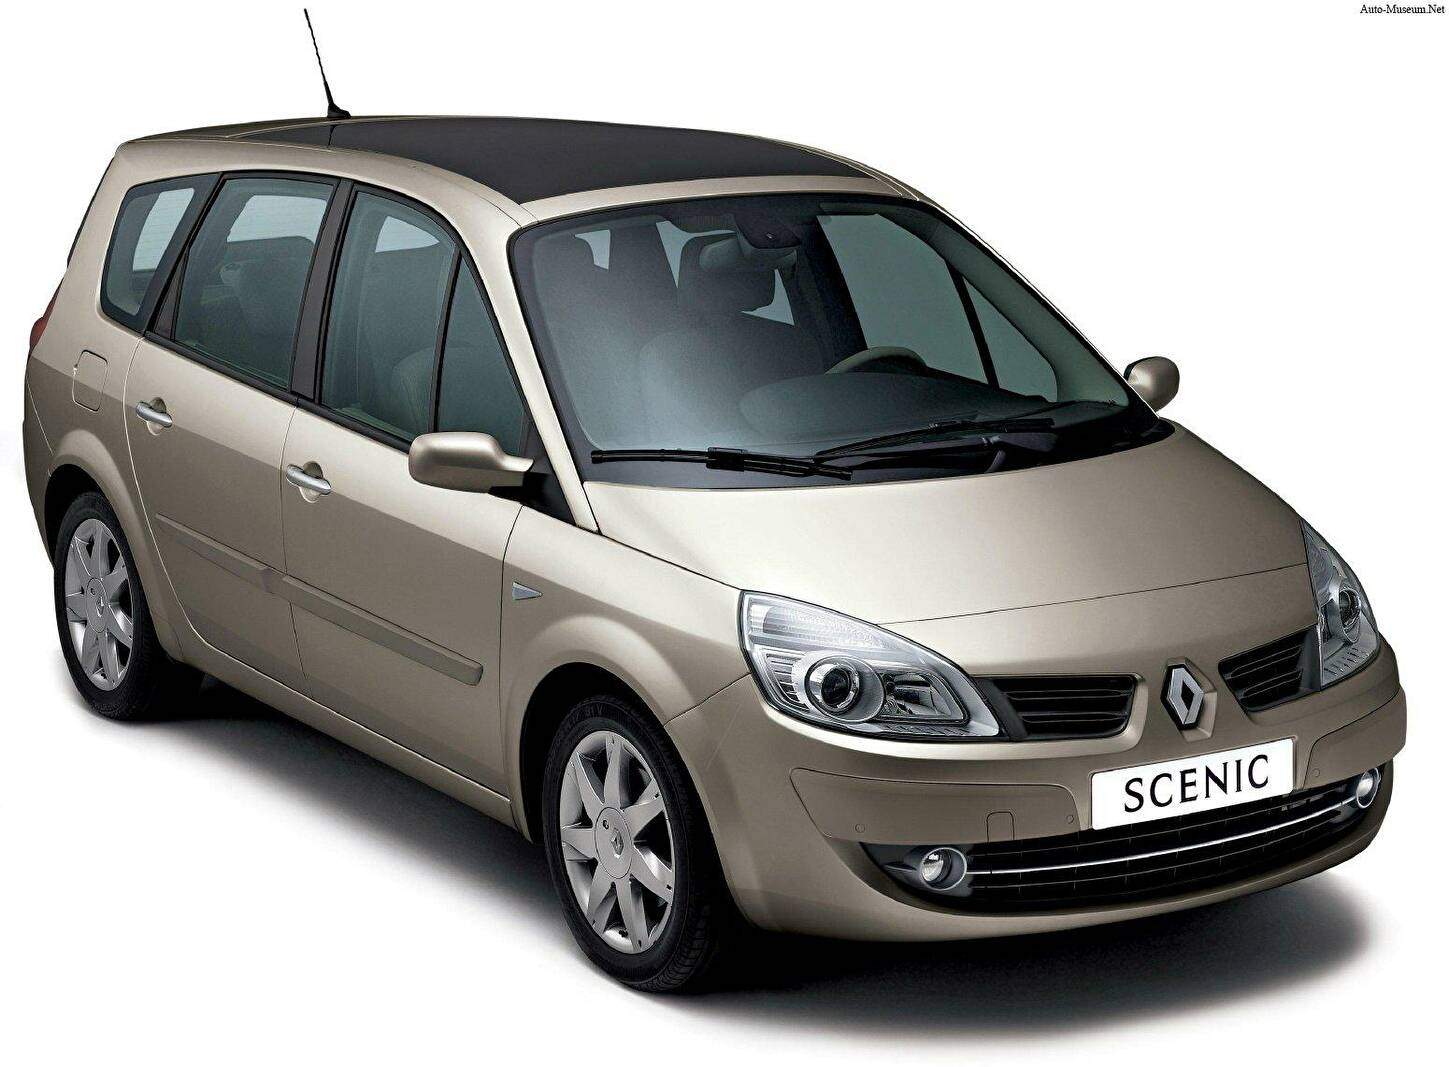 Fiche technique Renault Scenic II 1.5 dCi 85 (20052009)